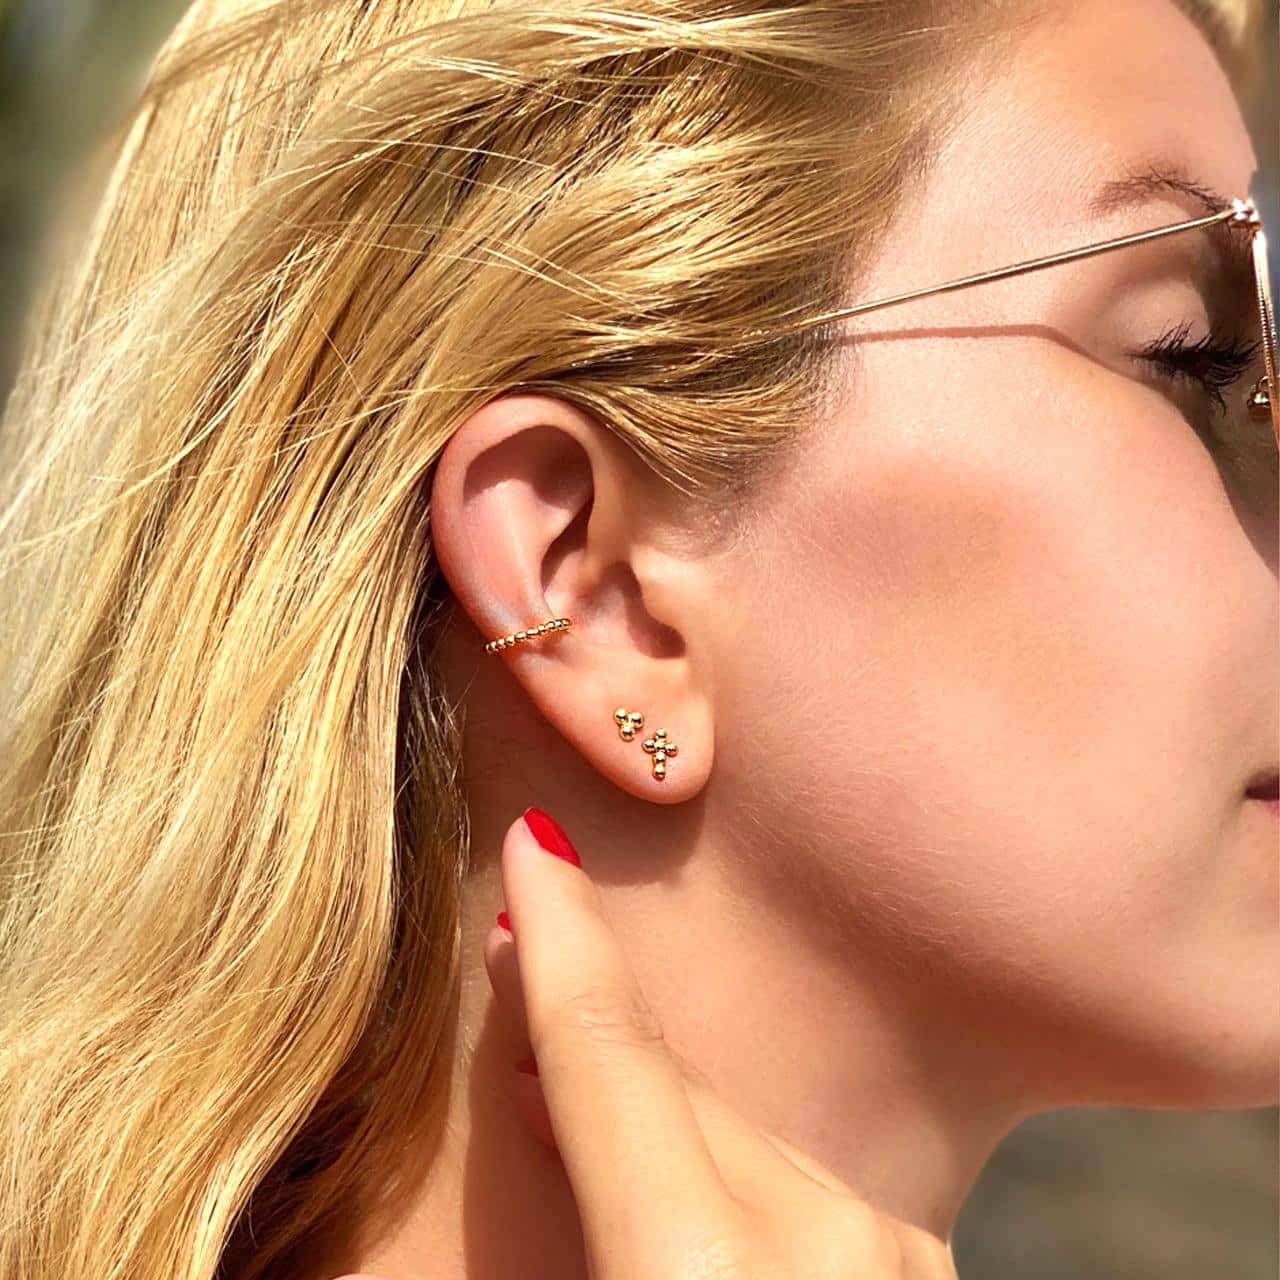 Moderner goldener Ear Cuff zu weiteren angesagten goldenen Ohrsteckern für den Ear Candy Look gestylt in Arosa